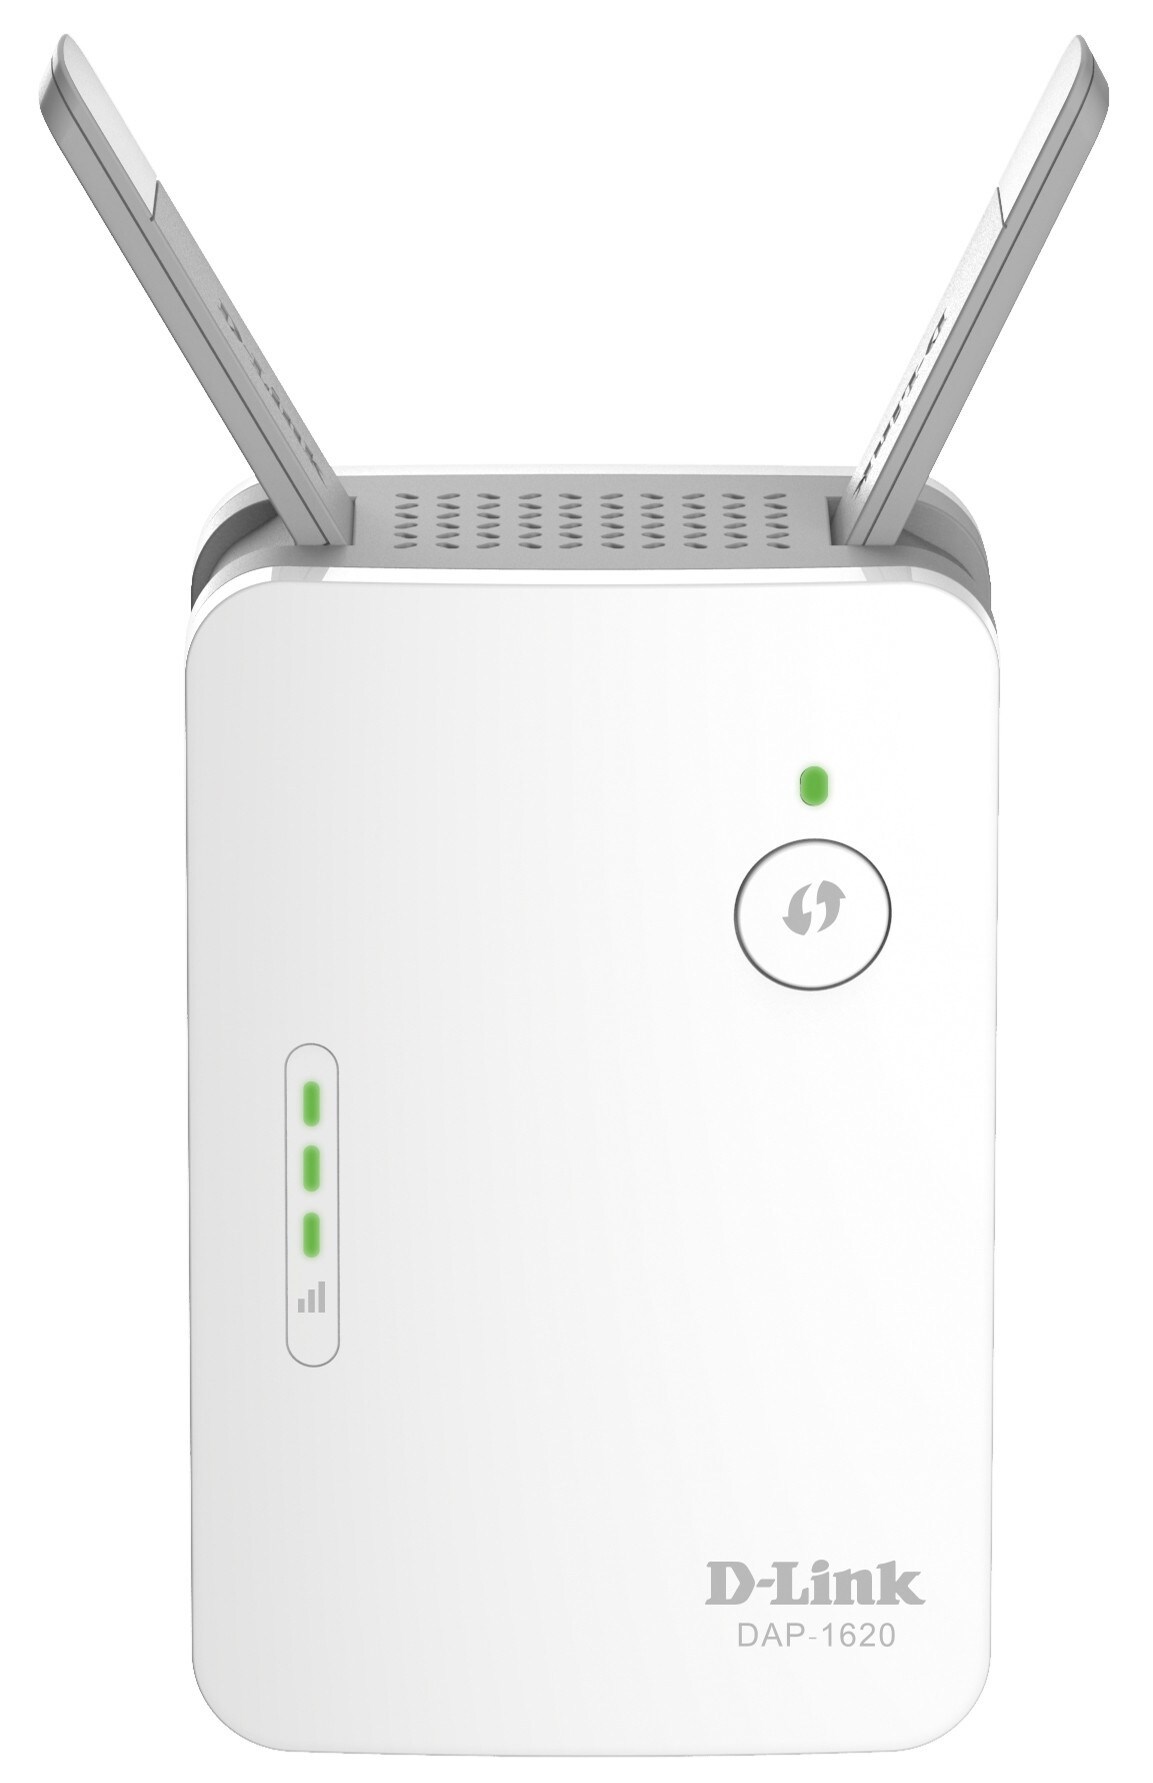 DAP-1620 wi-fi range extender | Elgiganten